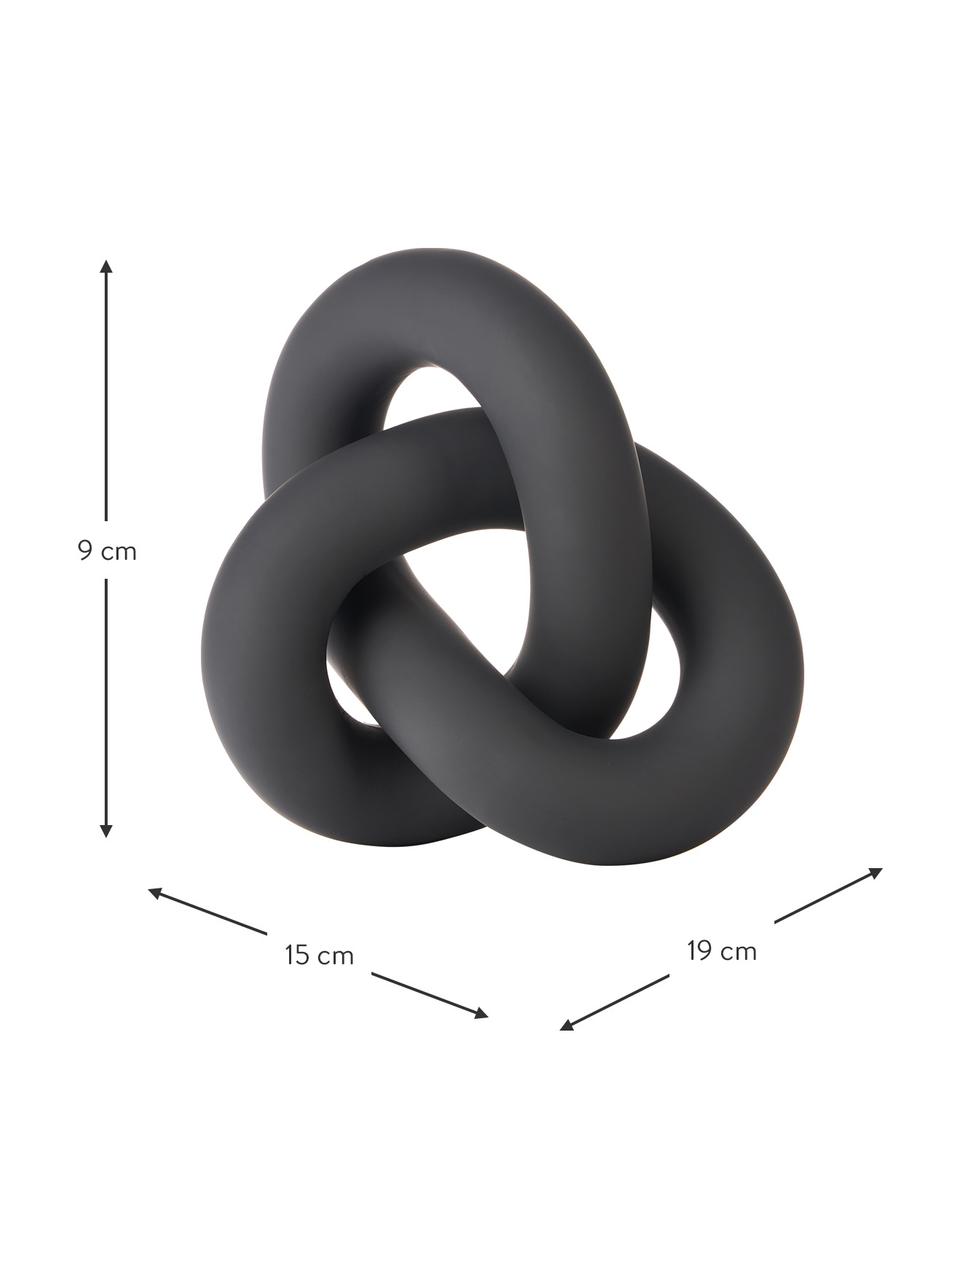 Deko-Objekt Knot aus Keramik in Schwarz, Keramik, Schwarz, matt, B 19 x H 9 cm